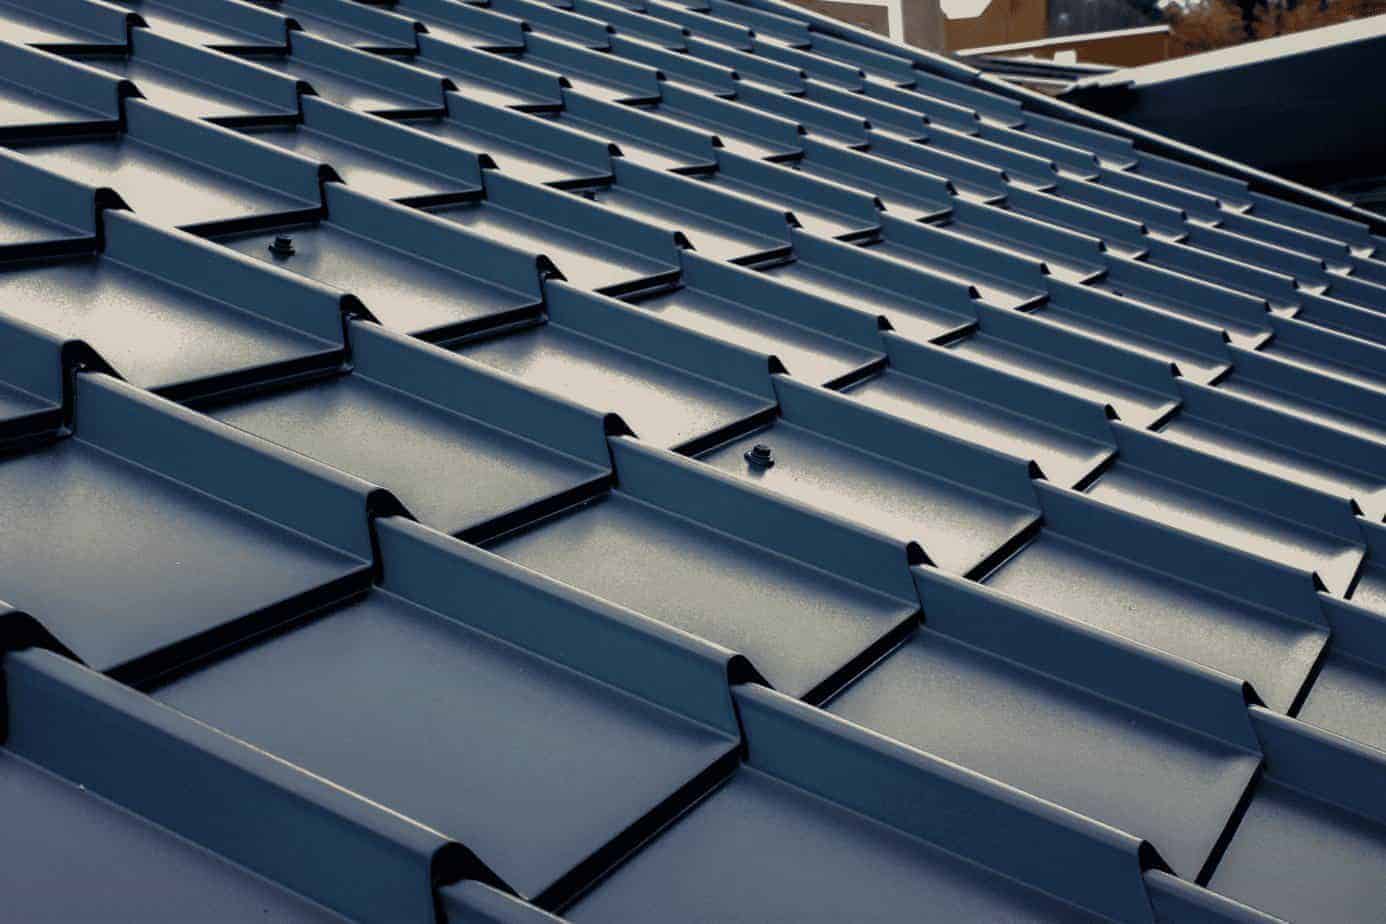 Geef je dak een kwalitatieve upgrade met de Aqua-Pan dakbedekking